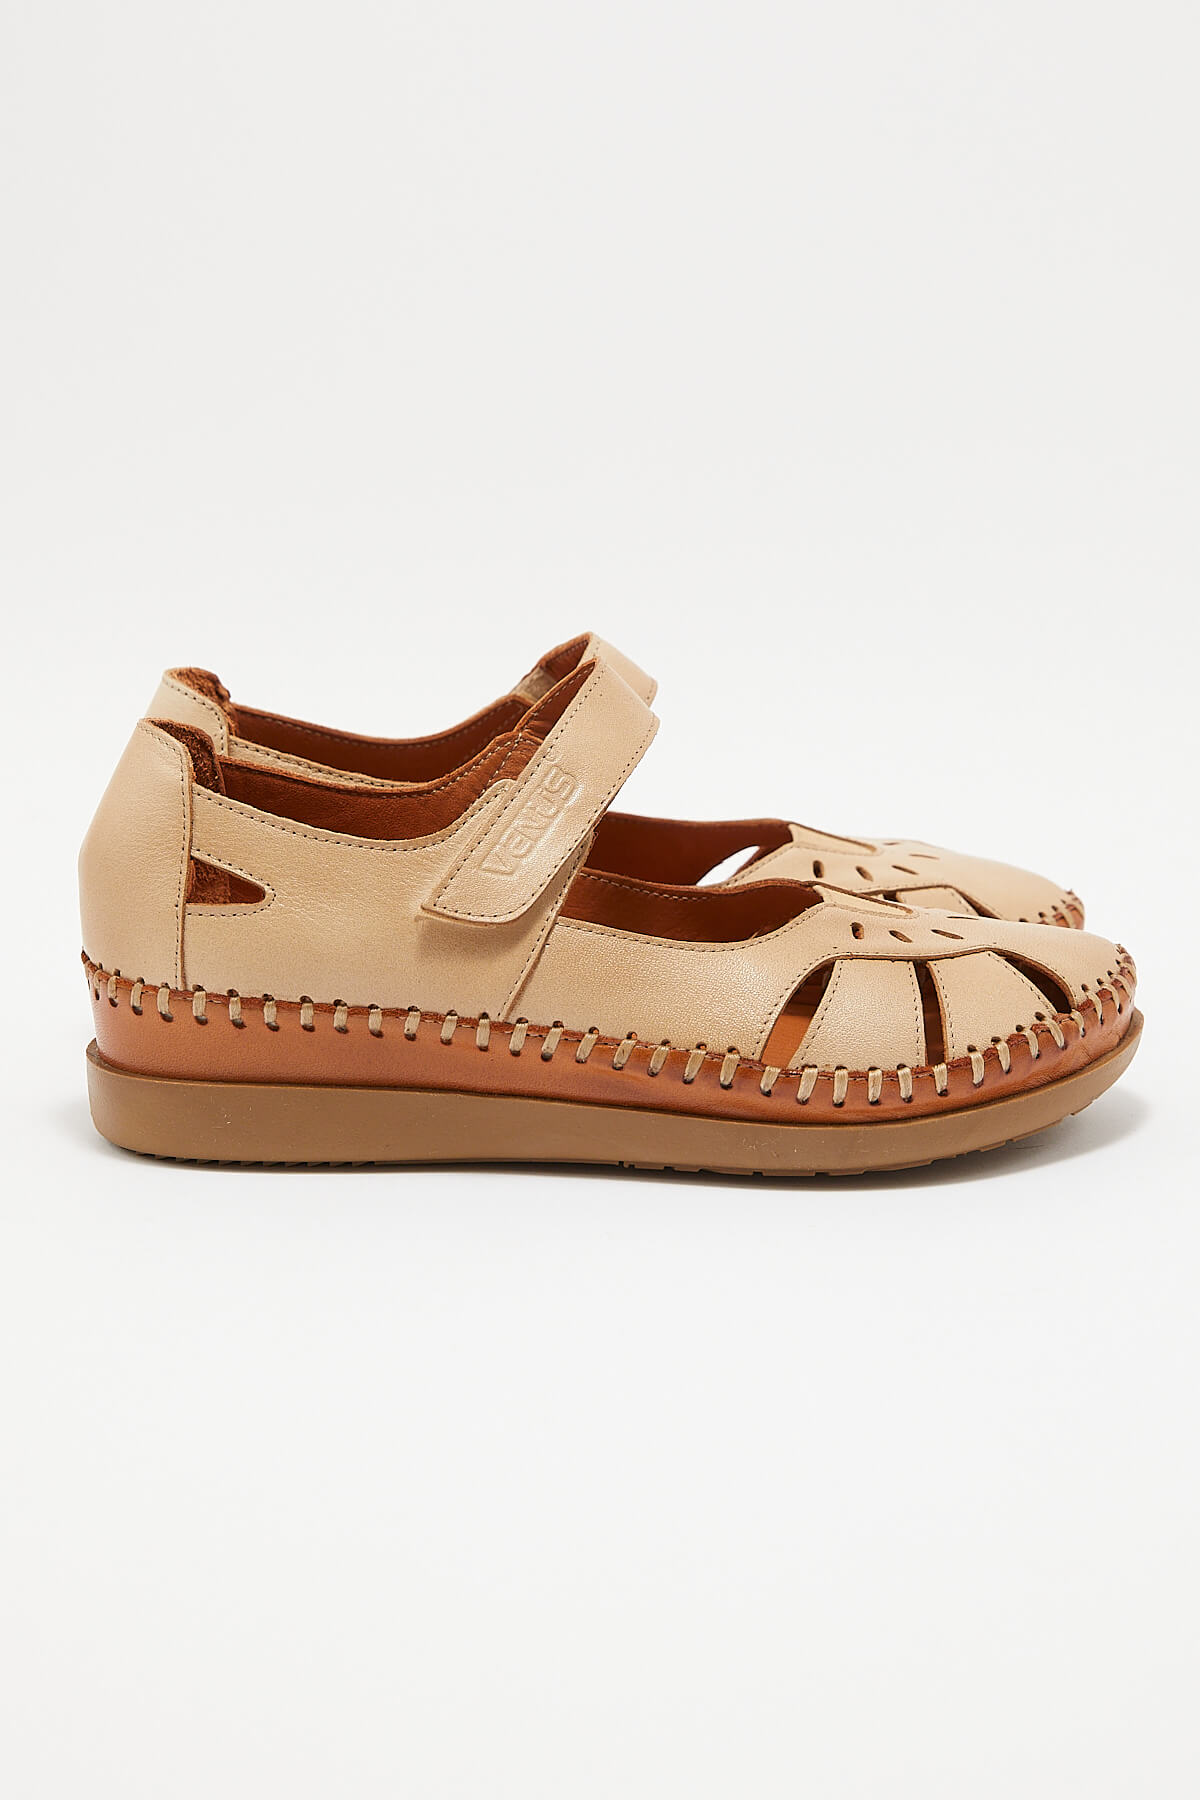 Kadın Comfort Deri Sandalet Bej 22793524 - Thumbnail